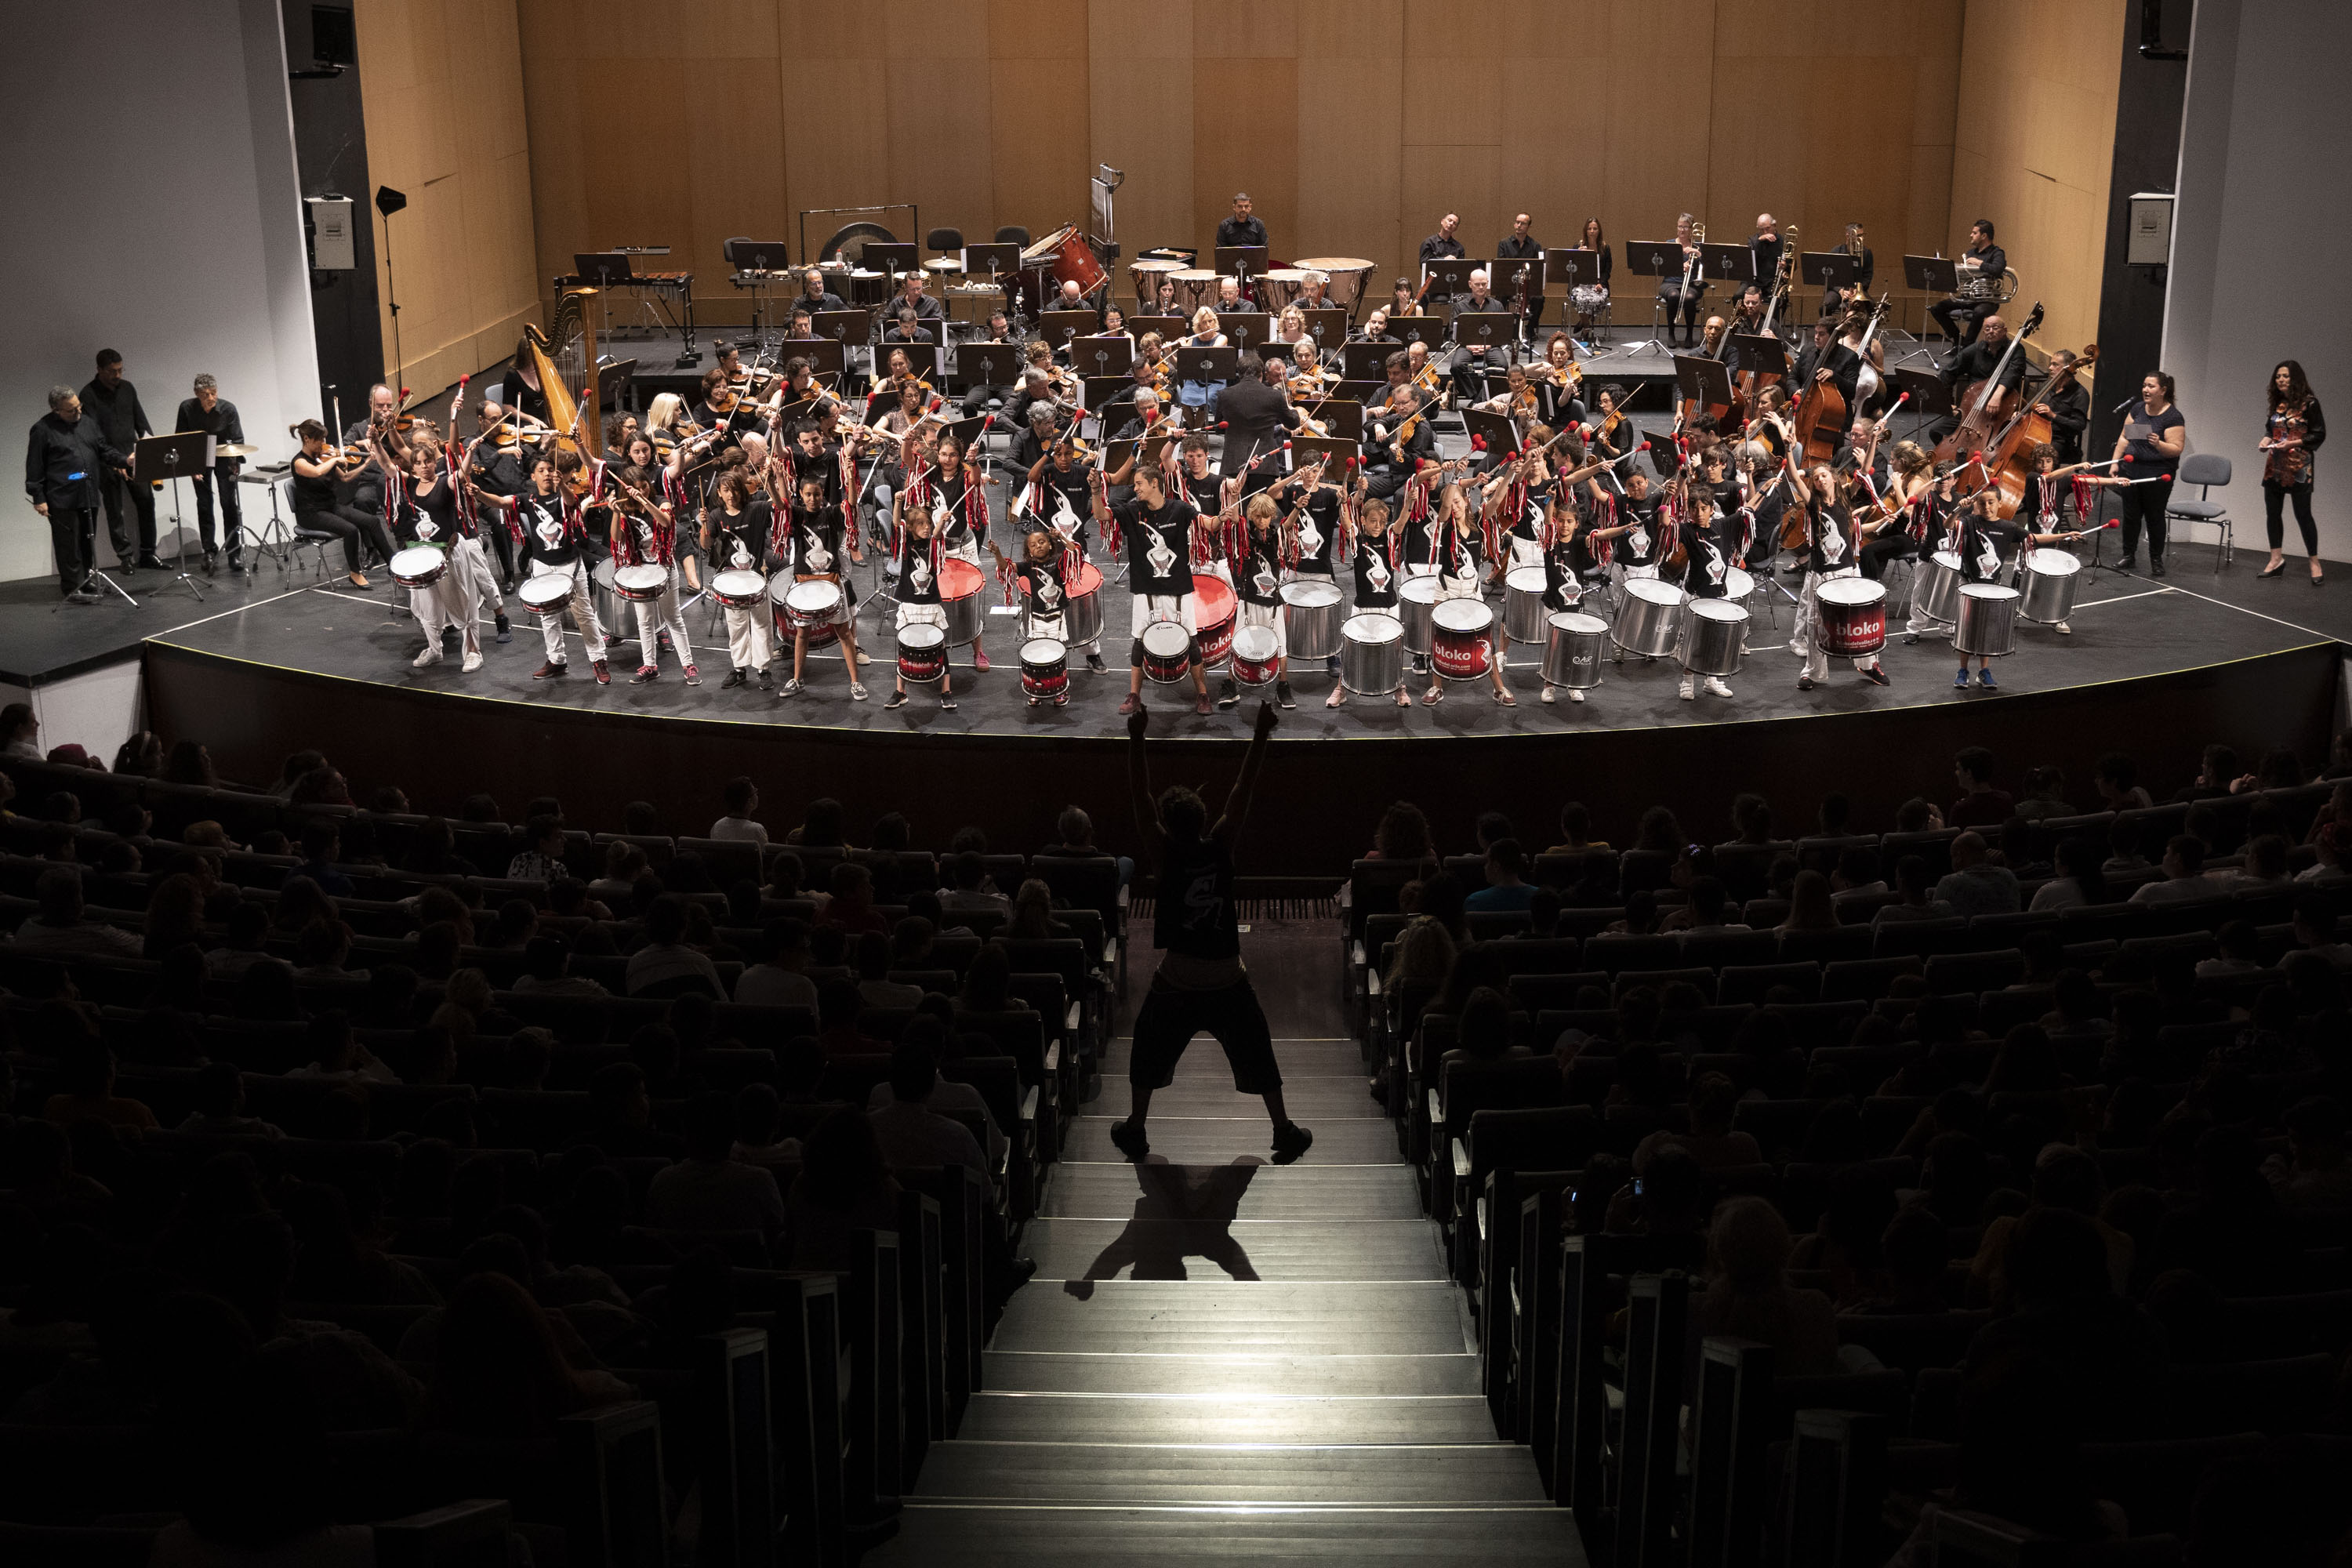 La Orquesta se fusiona en su programa didáctico ‘Malaika’ con los com-ponentes de Bloko Junior-Bloko del Valle . Sinfonica de Tenerife